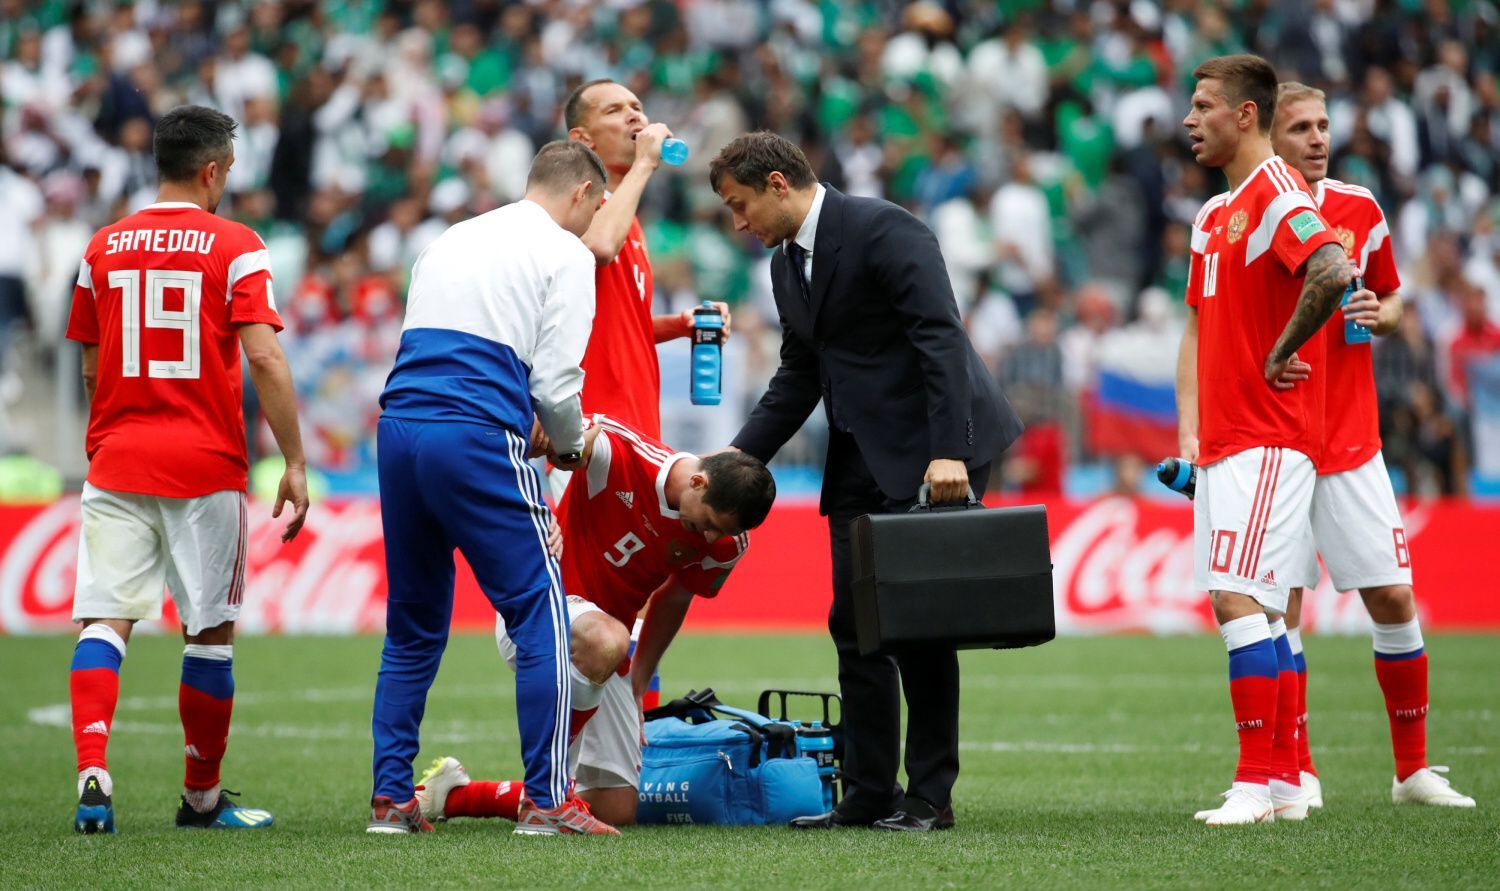 Zraněný Alan Dzagojev (9) v zápase Rusko -  Saúdská Arábie na MS 2018.